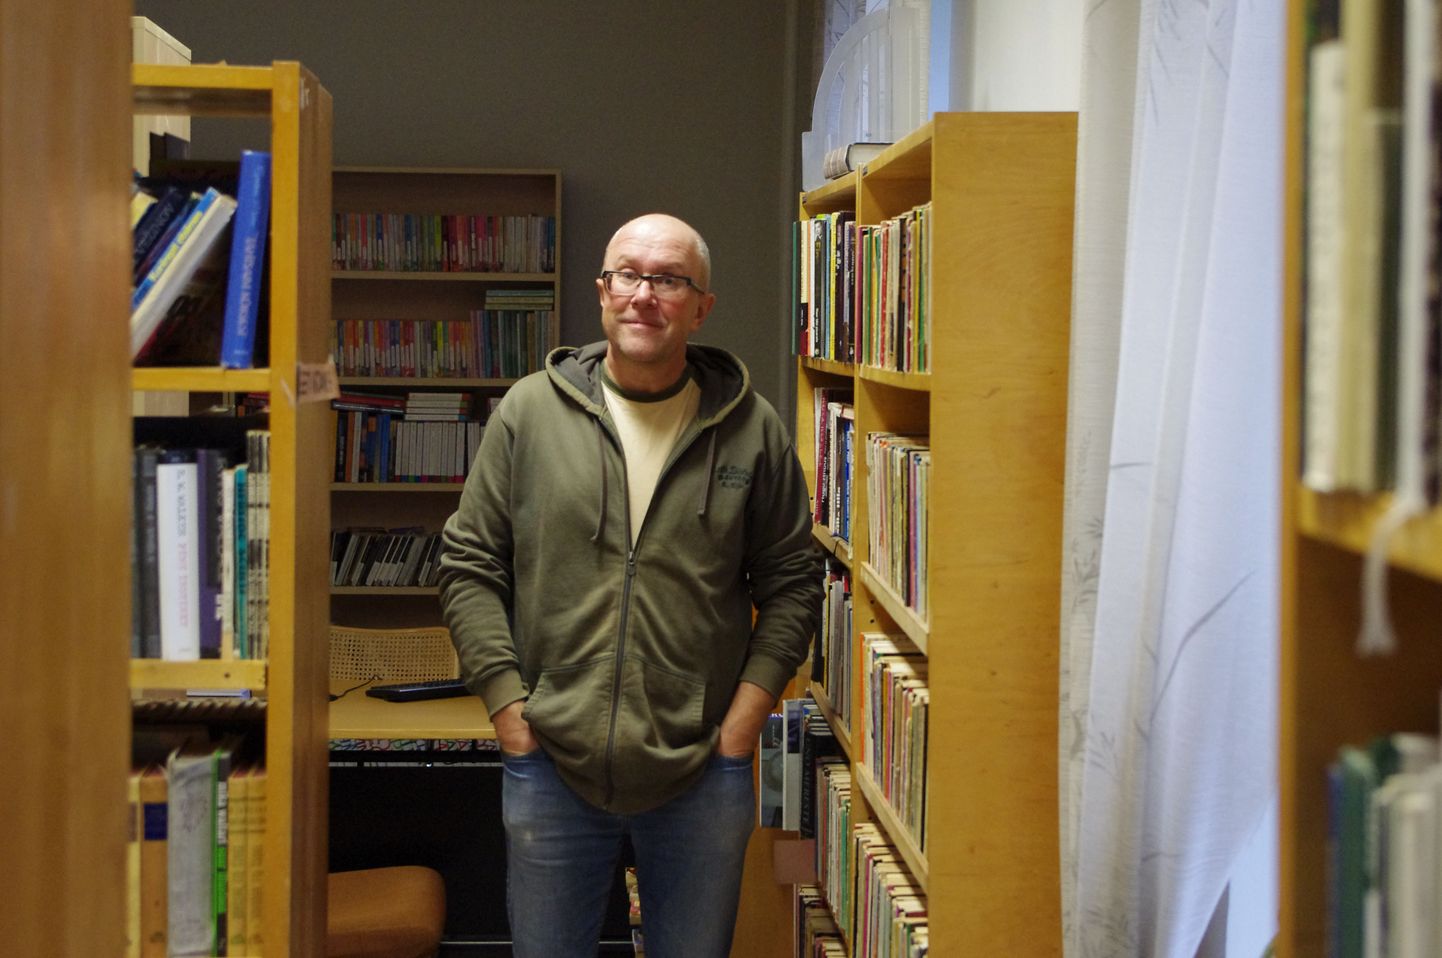 Mart Juur on Otepää raamatukogu sage külaline, lahkudes suviti tavaliselt raamatuvirnaga. Kirjandusministril jagub raamatukogutöötajatele üksnes kiidusõnu: «Raamatukogus töötavad inimesed tunnevad oma ala suurepäraselt, teades oma auditooriumi väga hästi.»